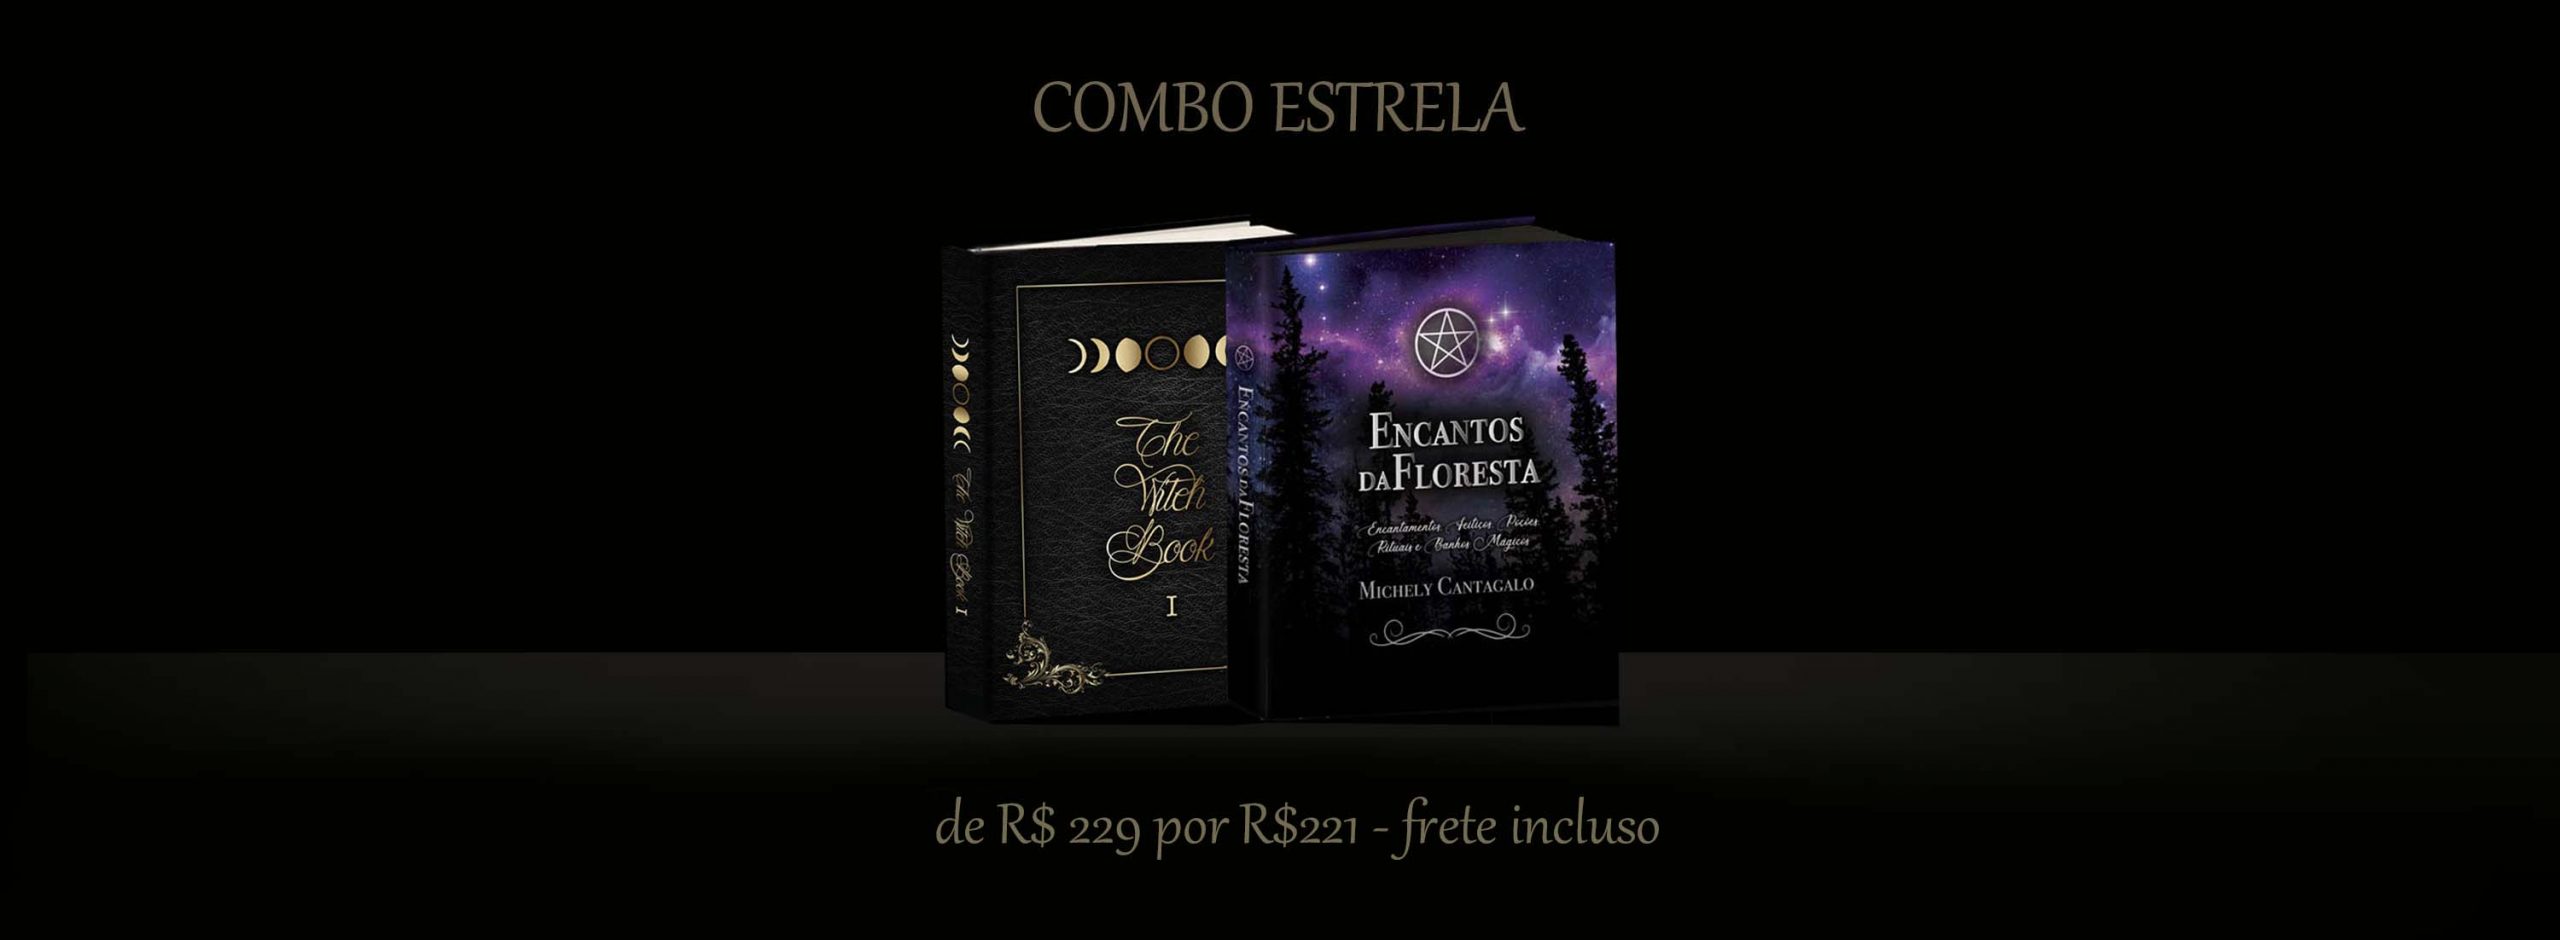 COMBO-ESTRELA copy